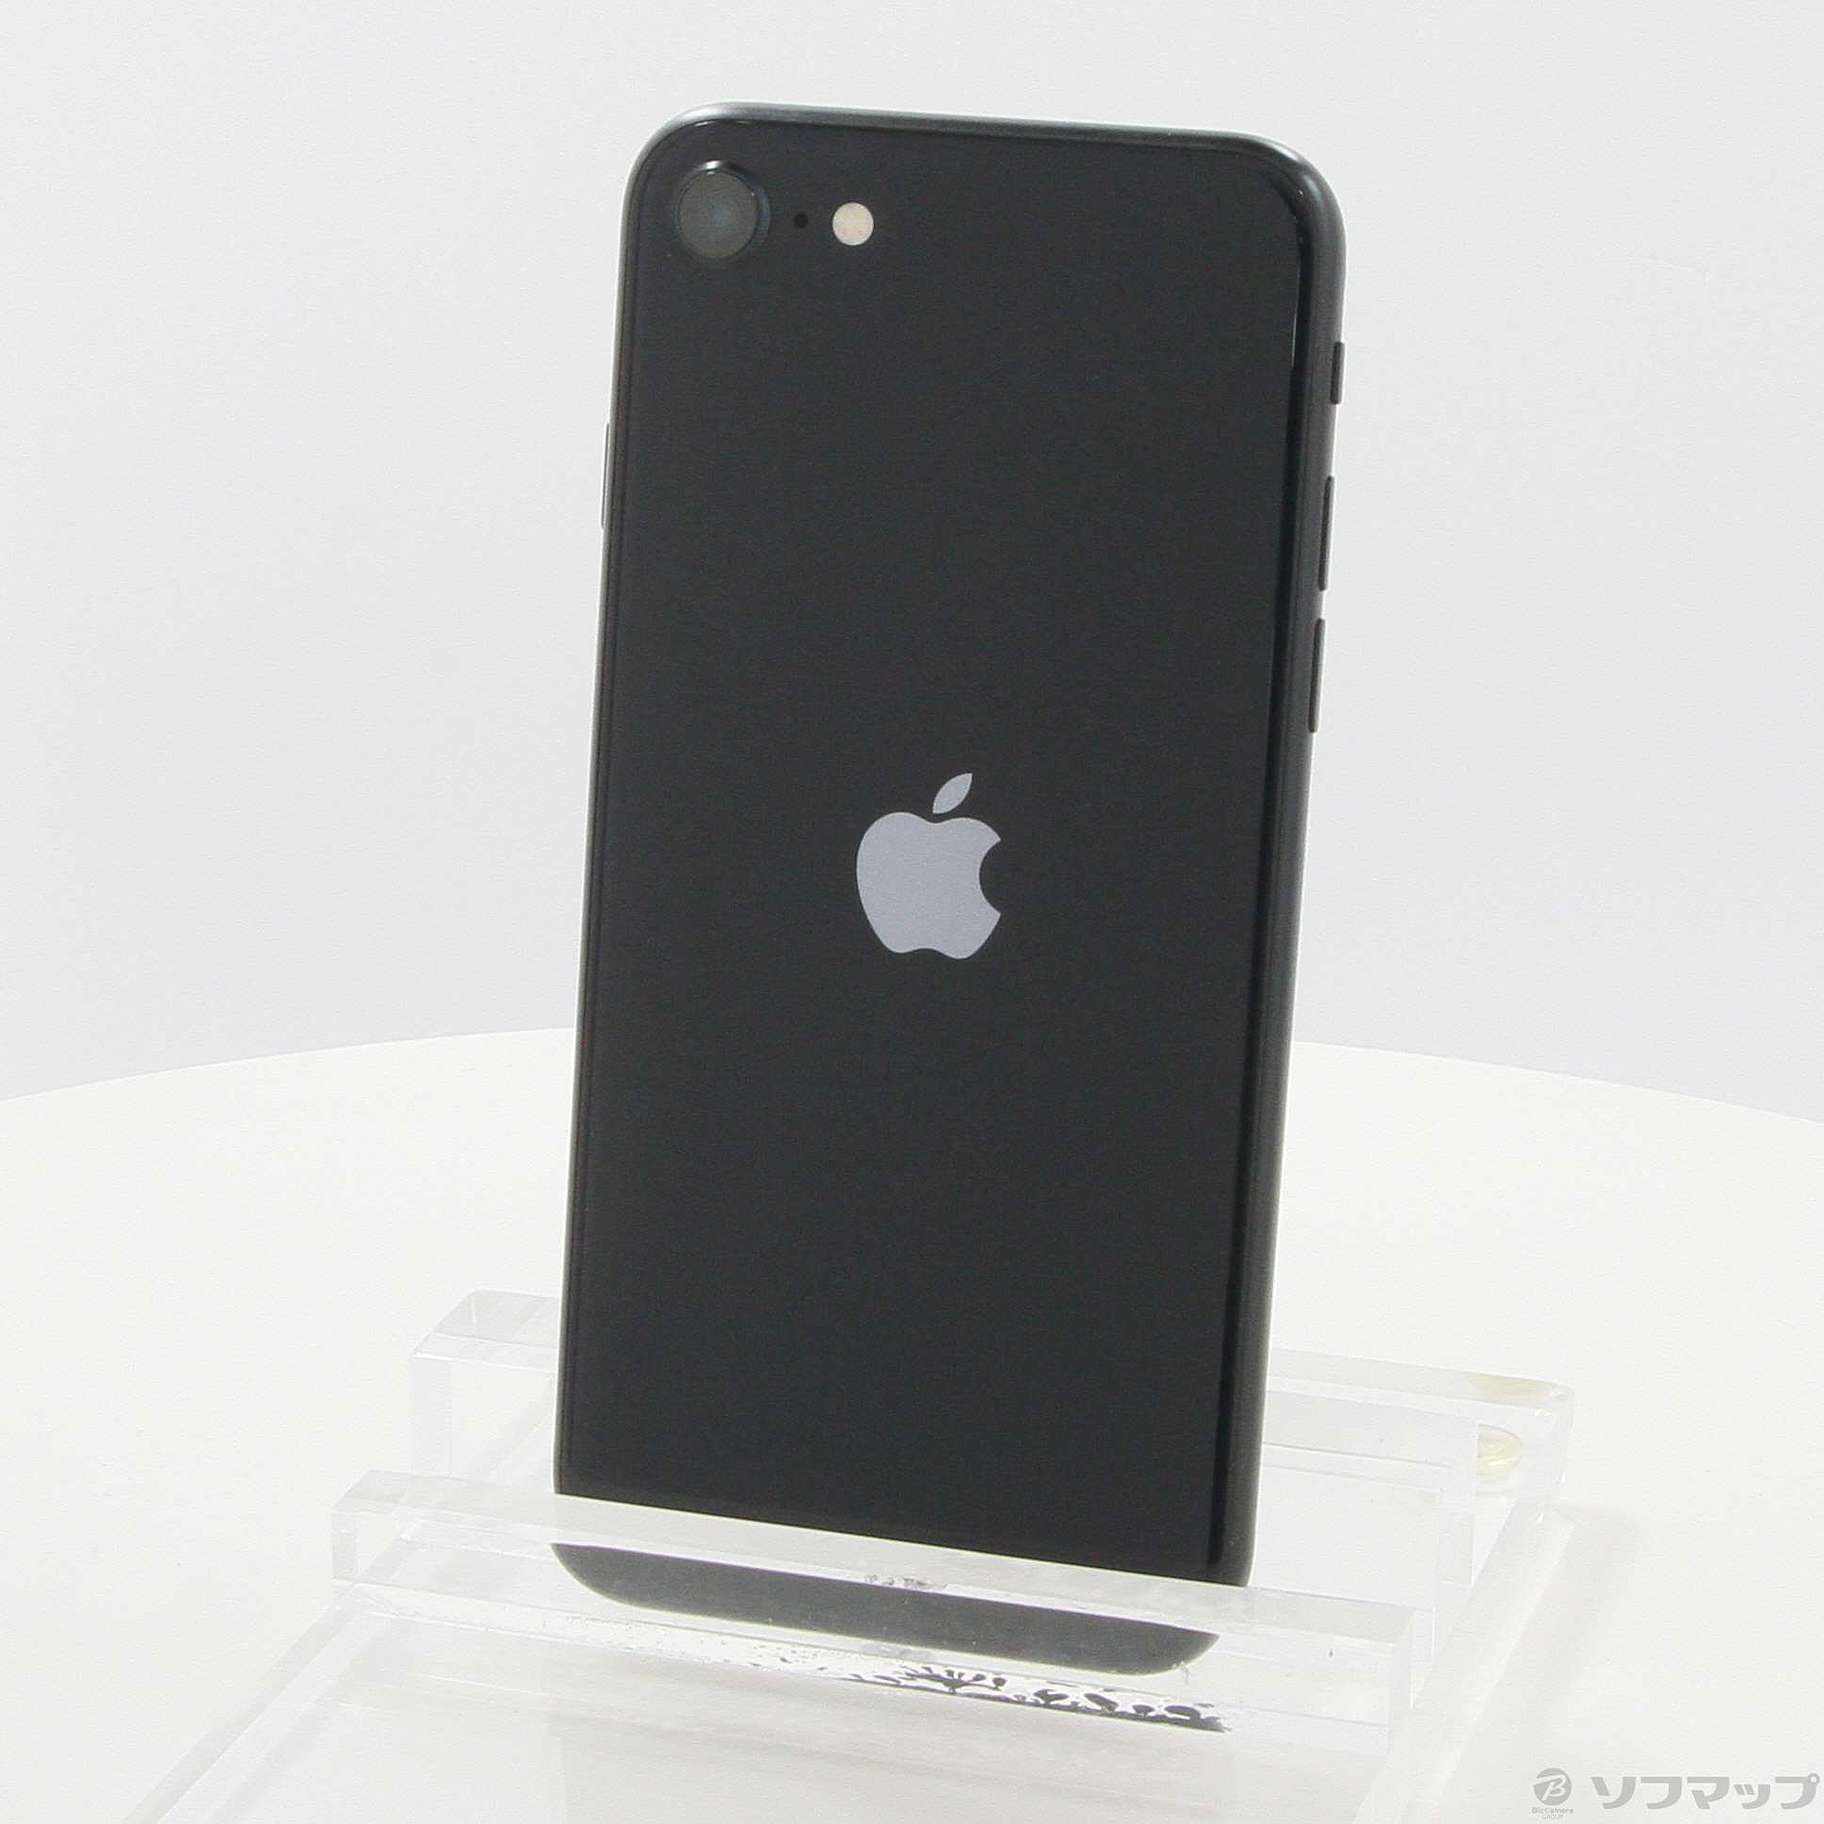 iPhone SE (第3世代) 64GB SIMフリー [ミッドナイト] 中古(白ロム)価格 ...